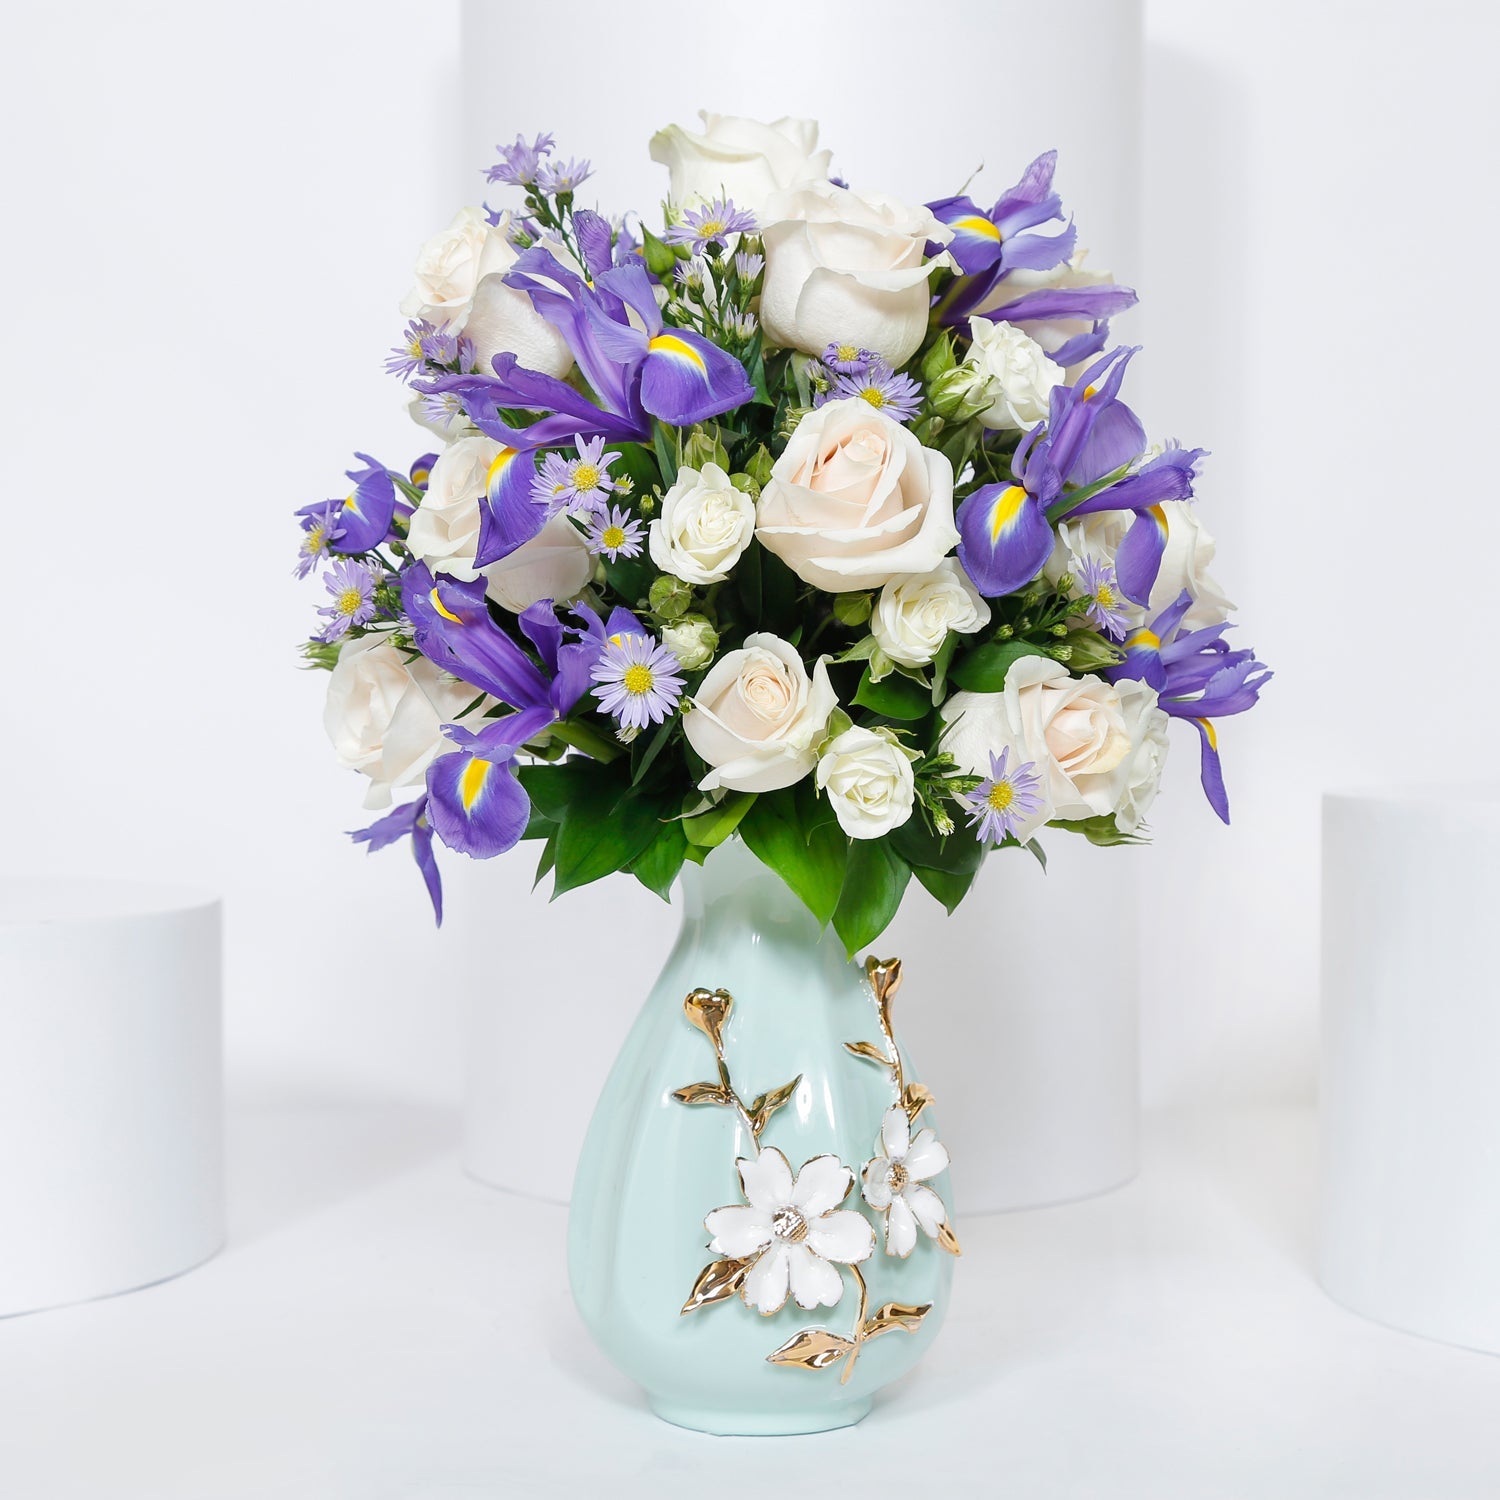 زهور بيضاء وزرقاء للعمرة